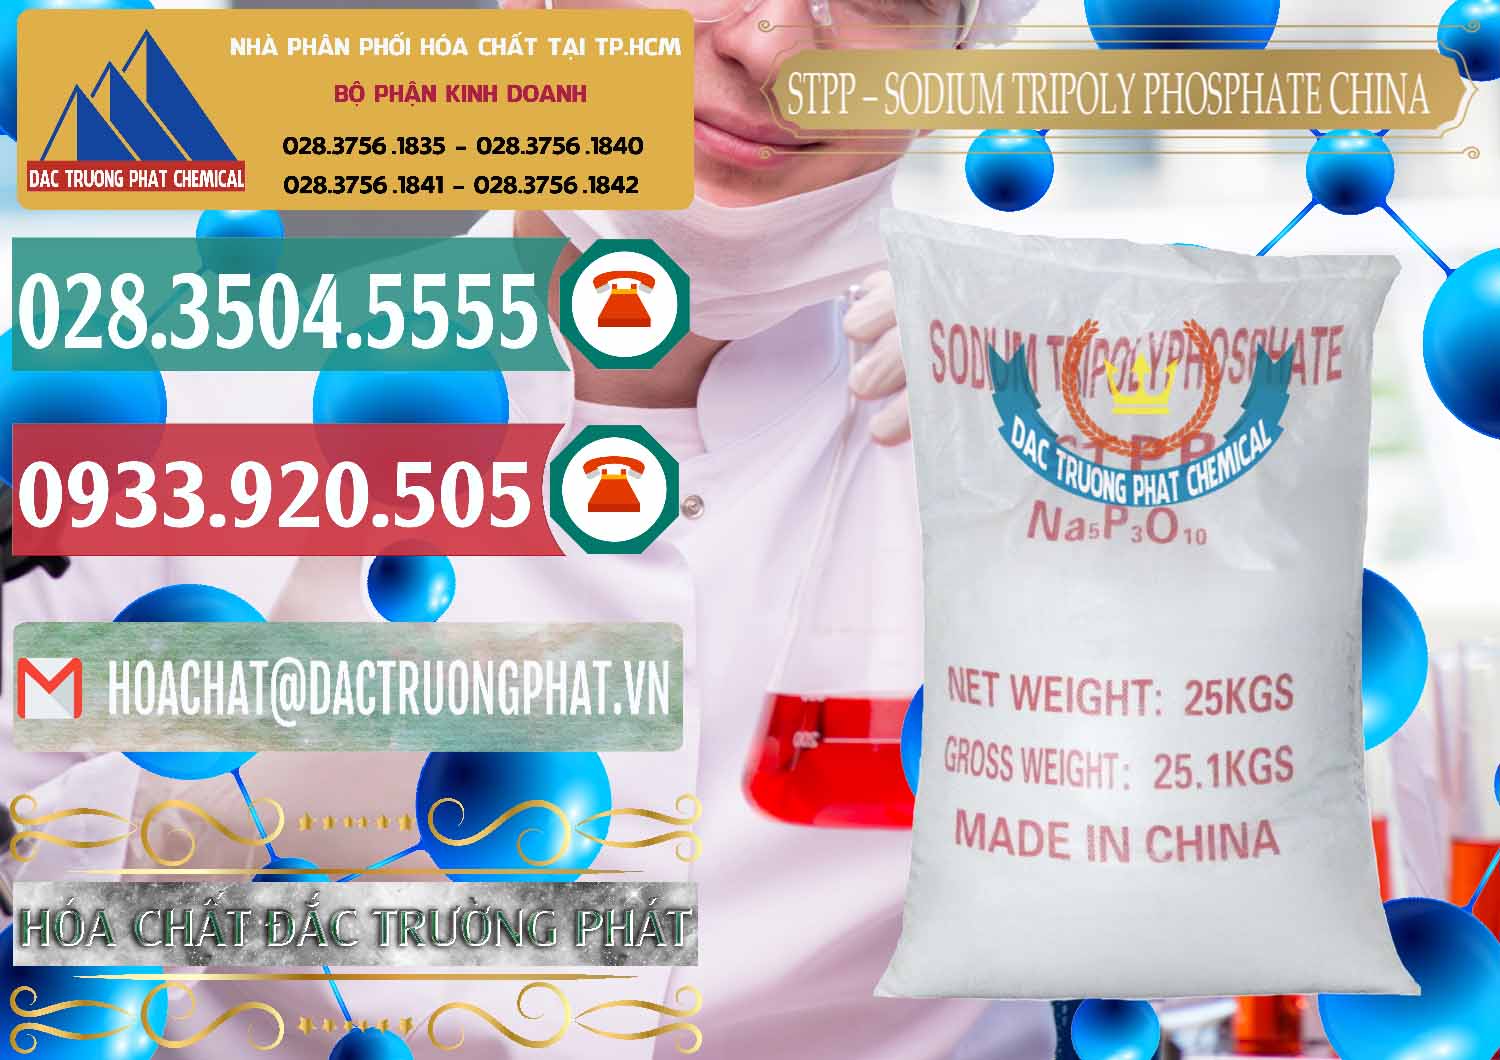 Chuyên cung cấp - bán Sodium Tripoly Phosphate - STPP 96% Chữ Đỏ Trung Quốc China - 0155 - Chuyên bán ( phân phối ) hóa chất tại TP.HCM - muabanhoachat.vn